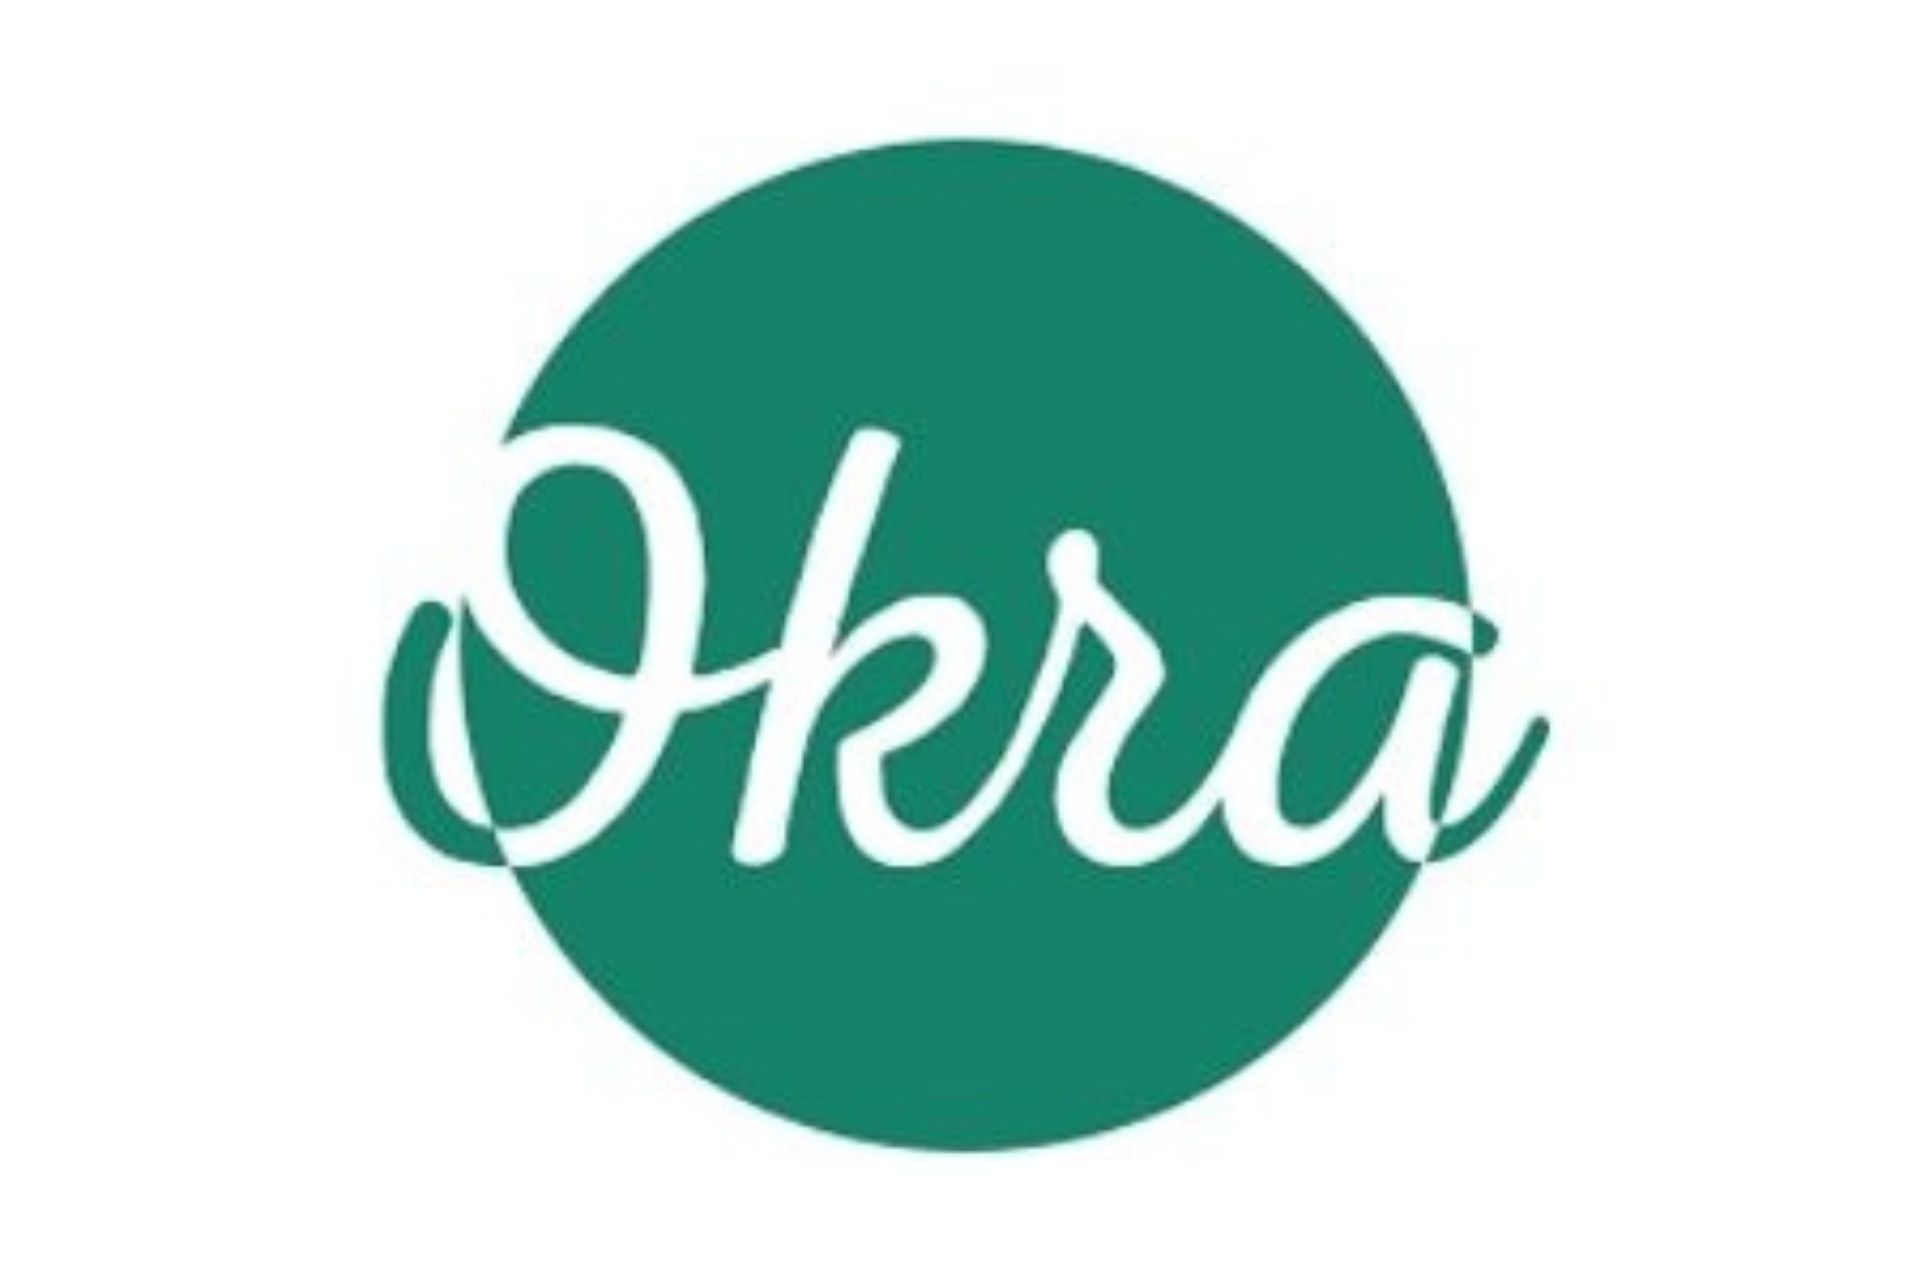 Okra logo